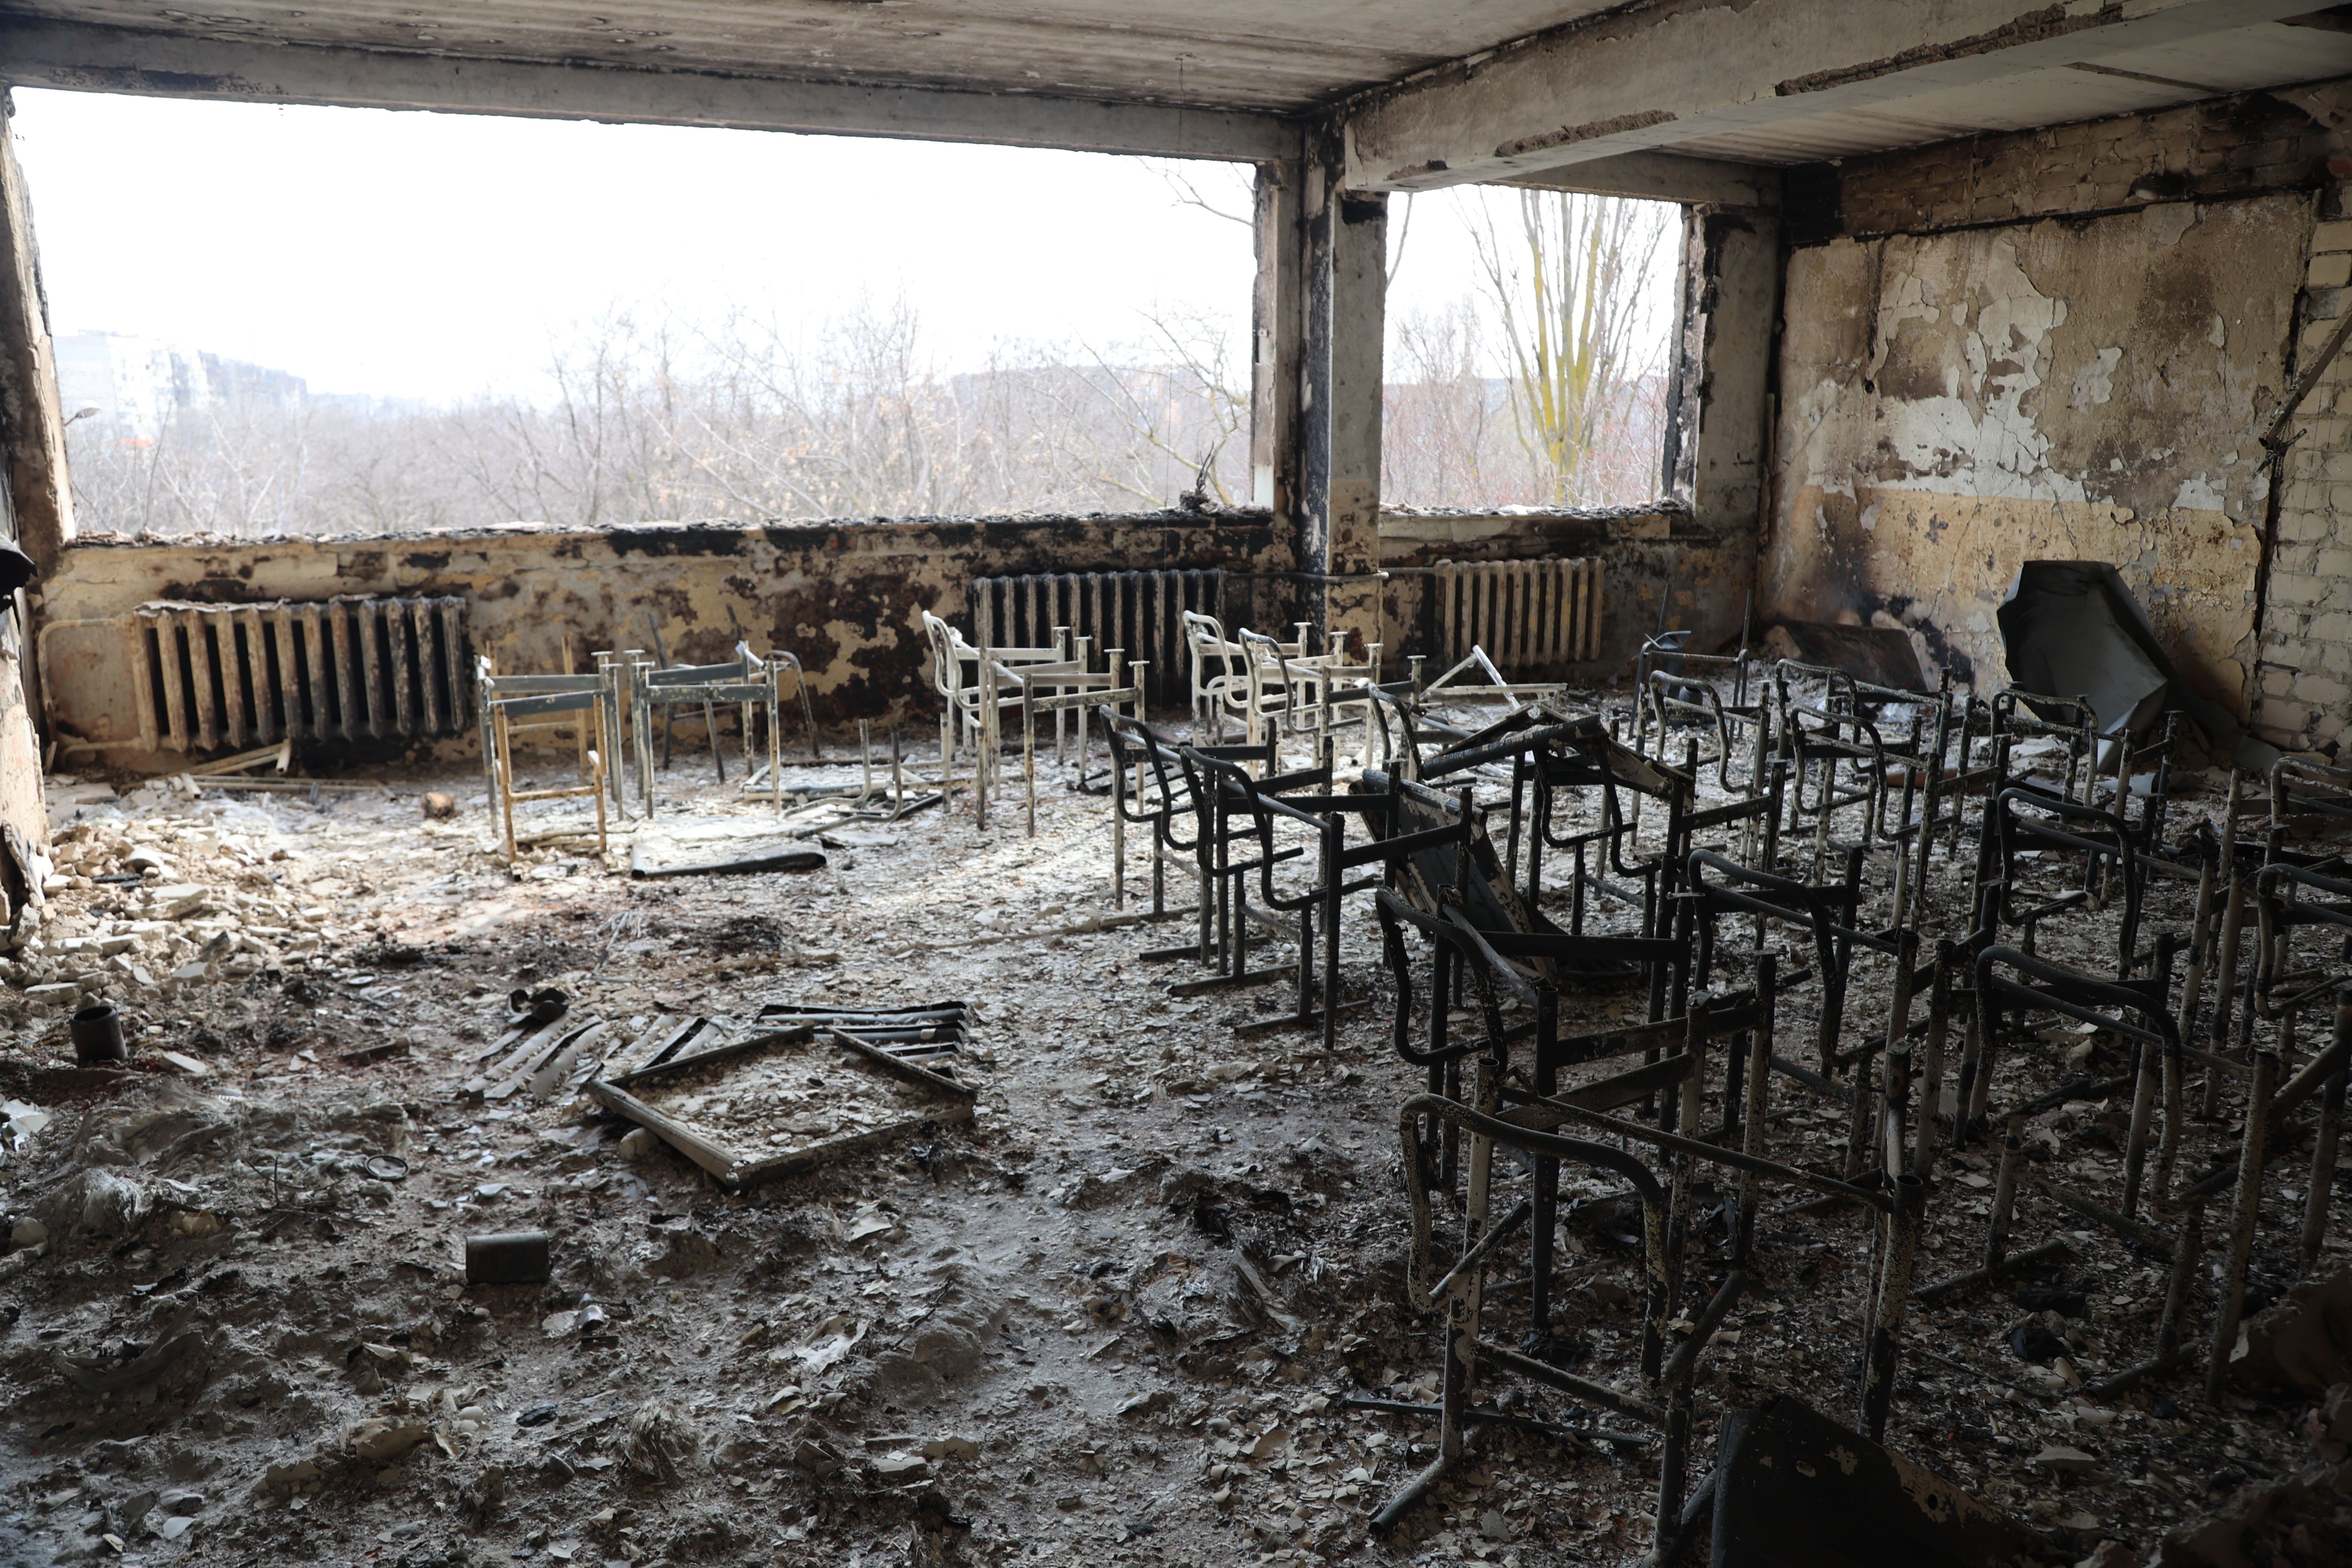     منظر لمدرسة تضررت بعد قصف يوم 29 مارس في مدينة ماريوبول الأوكرانية ، التي يسيطر عليها الجيش الروسي والانفصاليون الموالون لروسيا.